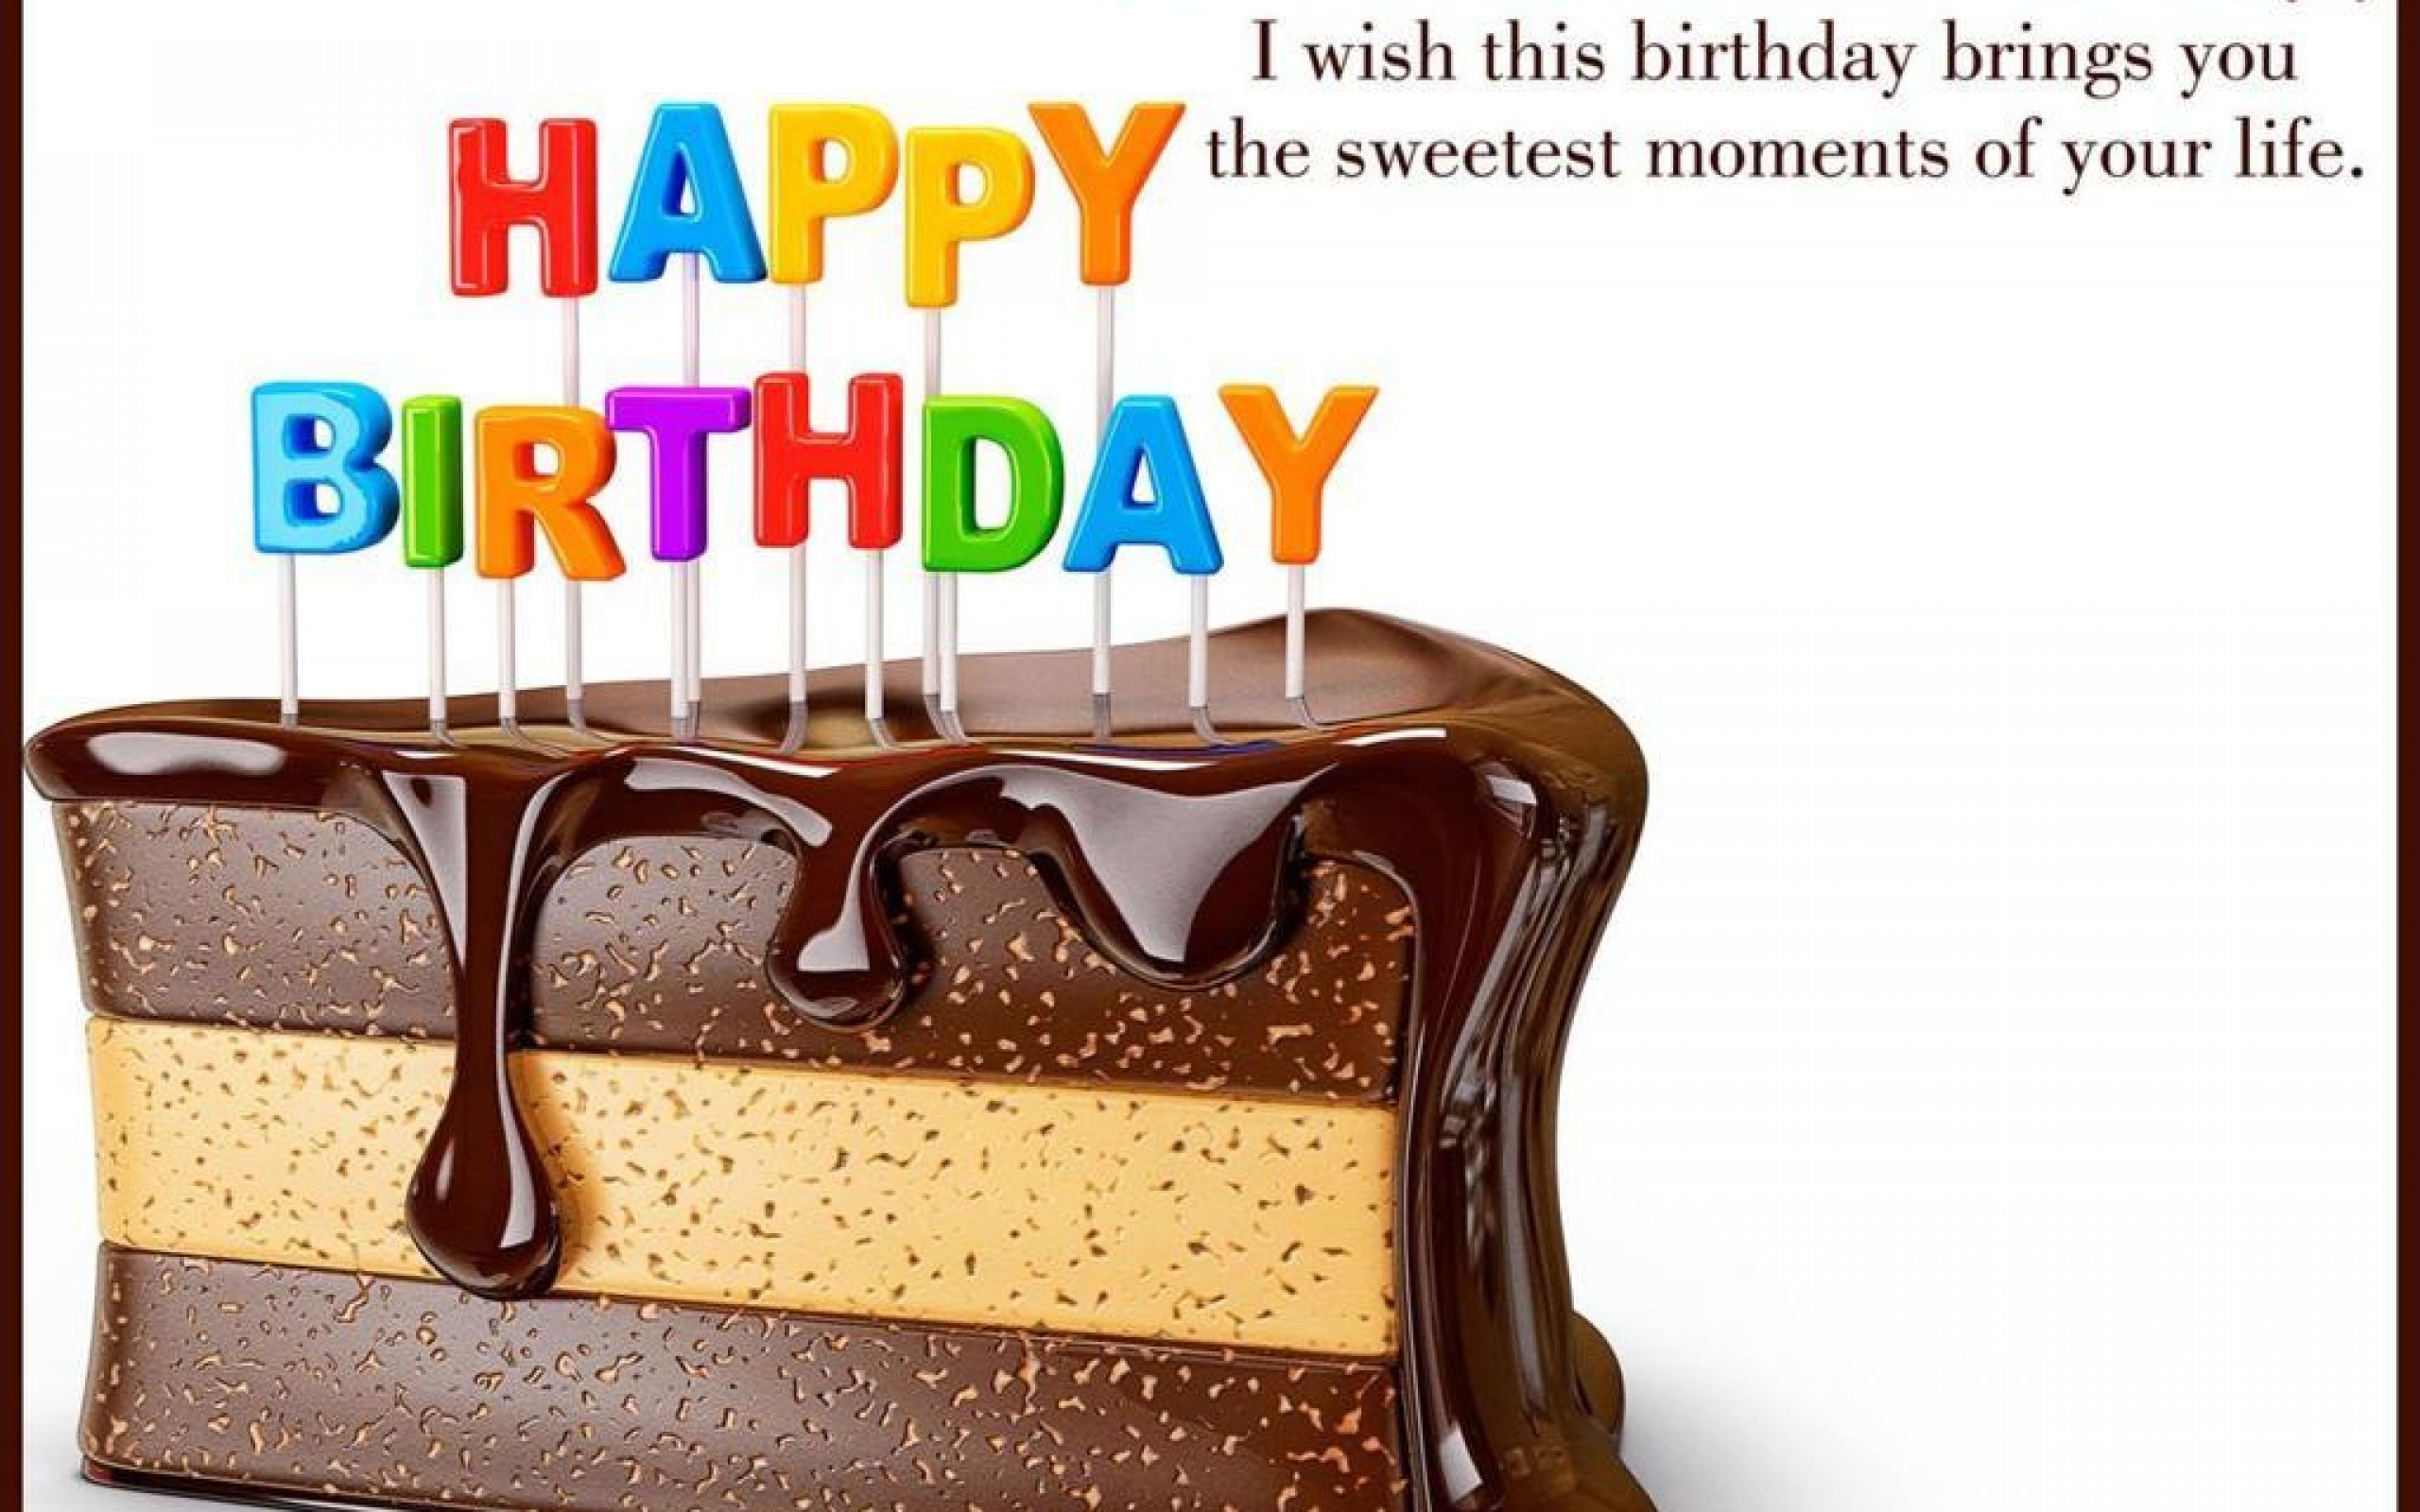 carta da parati di compleanno con virgolette,torta al cioccolato,prodotto,torta,buttercream,torta di compleanno